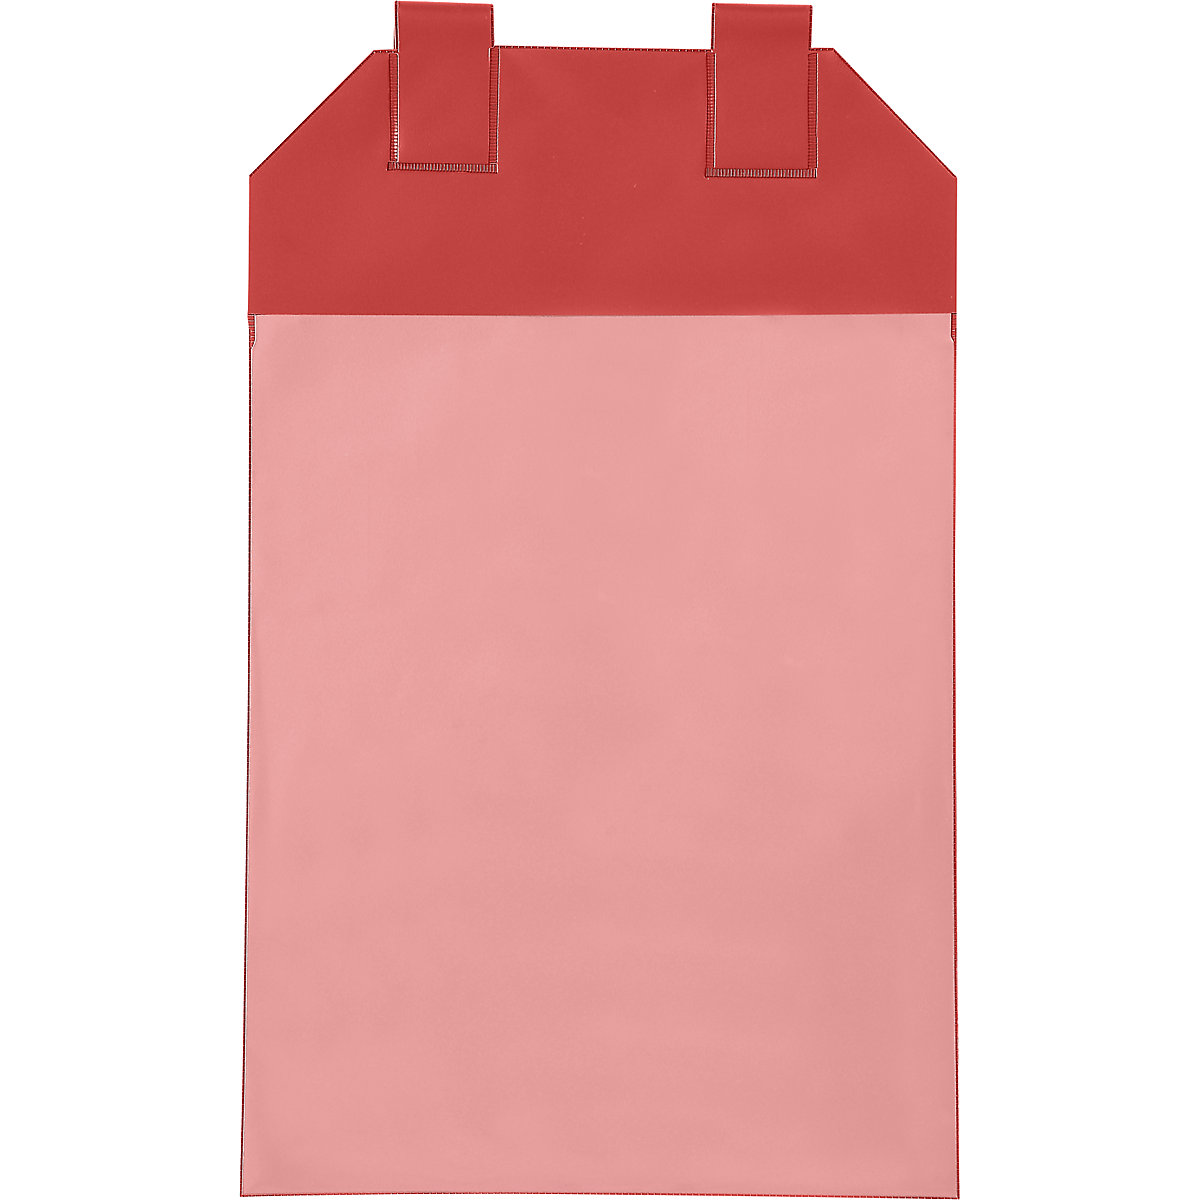 Buste per box grigliati, conf. da 50 pz., per formato carta UNI A4, rosso-5